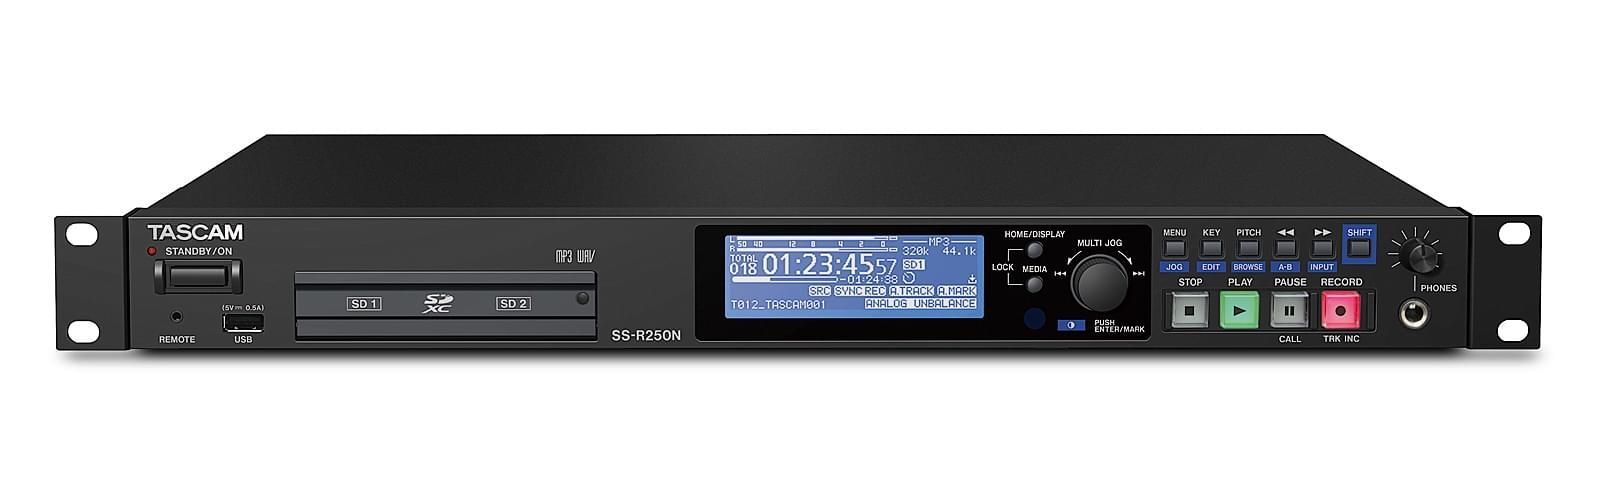 Tascam SS R250N 19 1 HE Netzwerkfähiger Solid State Audiorecorder  - Onlineshop Musikhaus Markstein